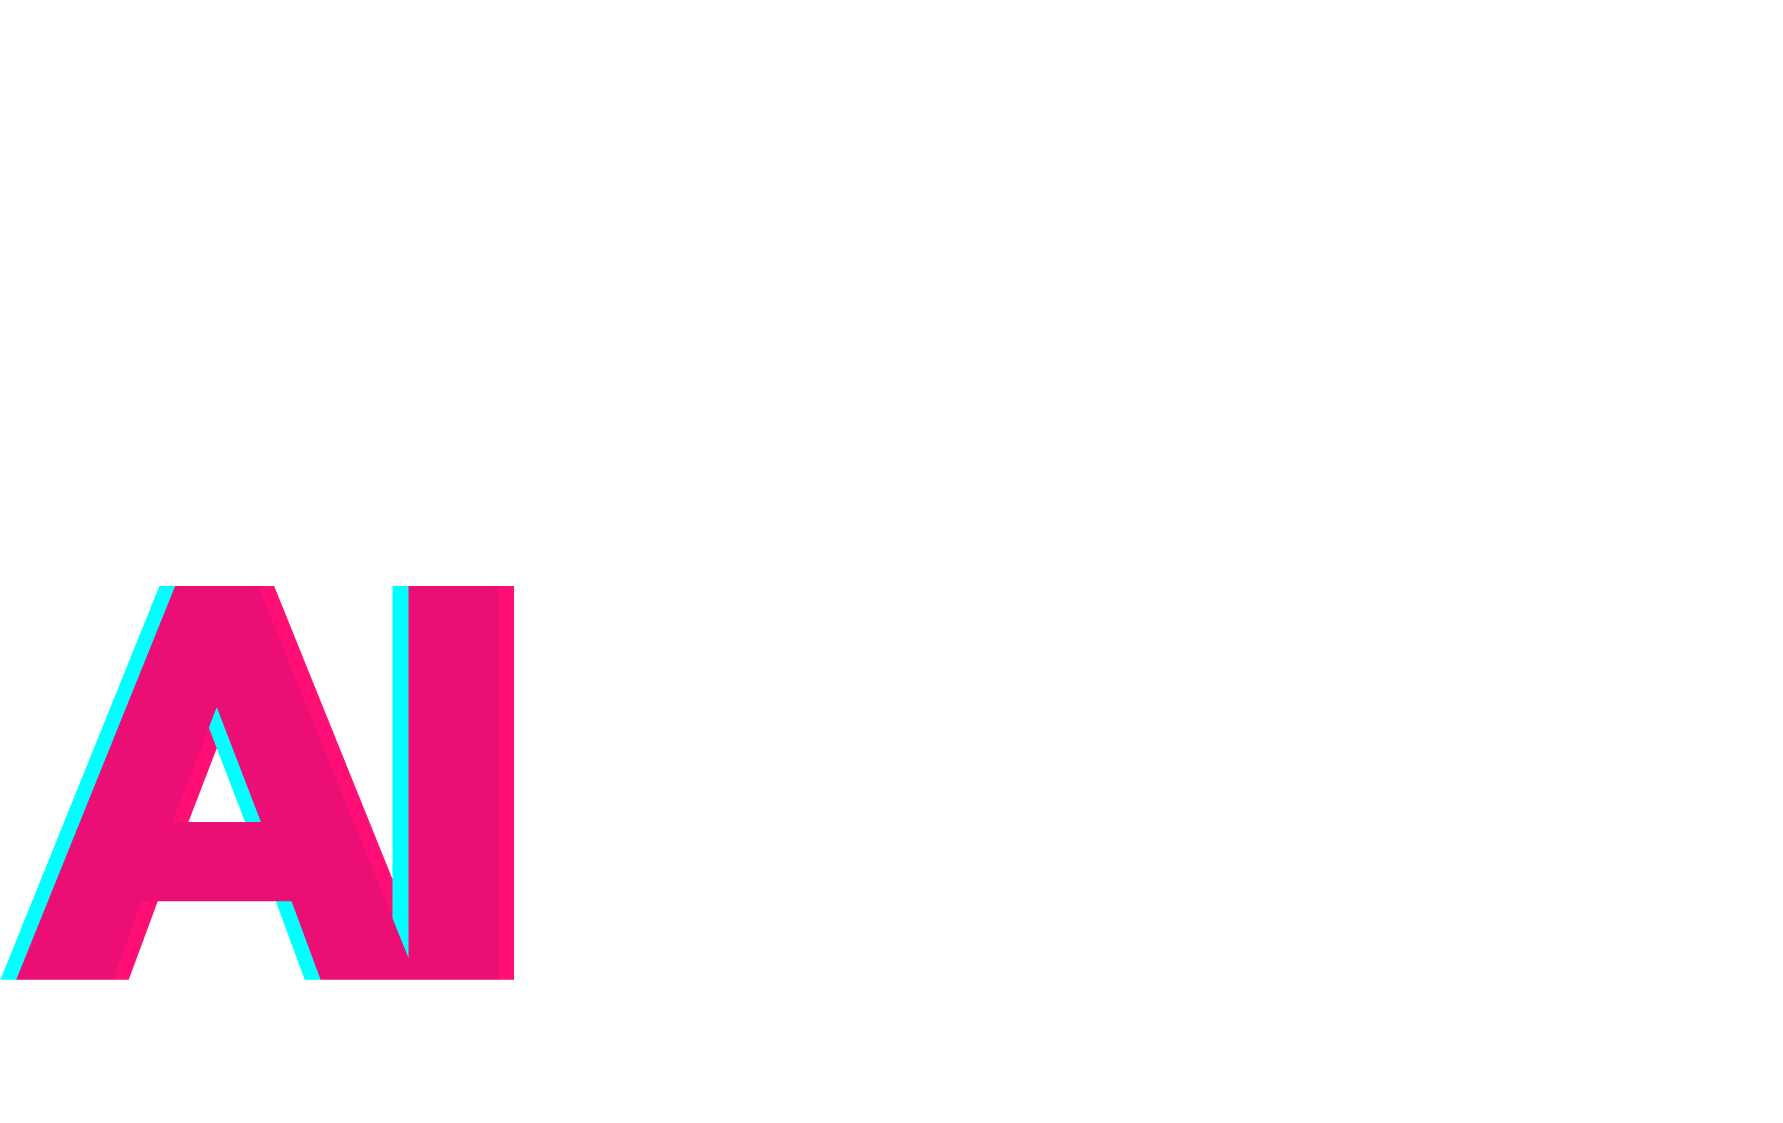 Trusted AI Coalition Logo